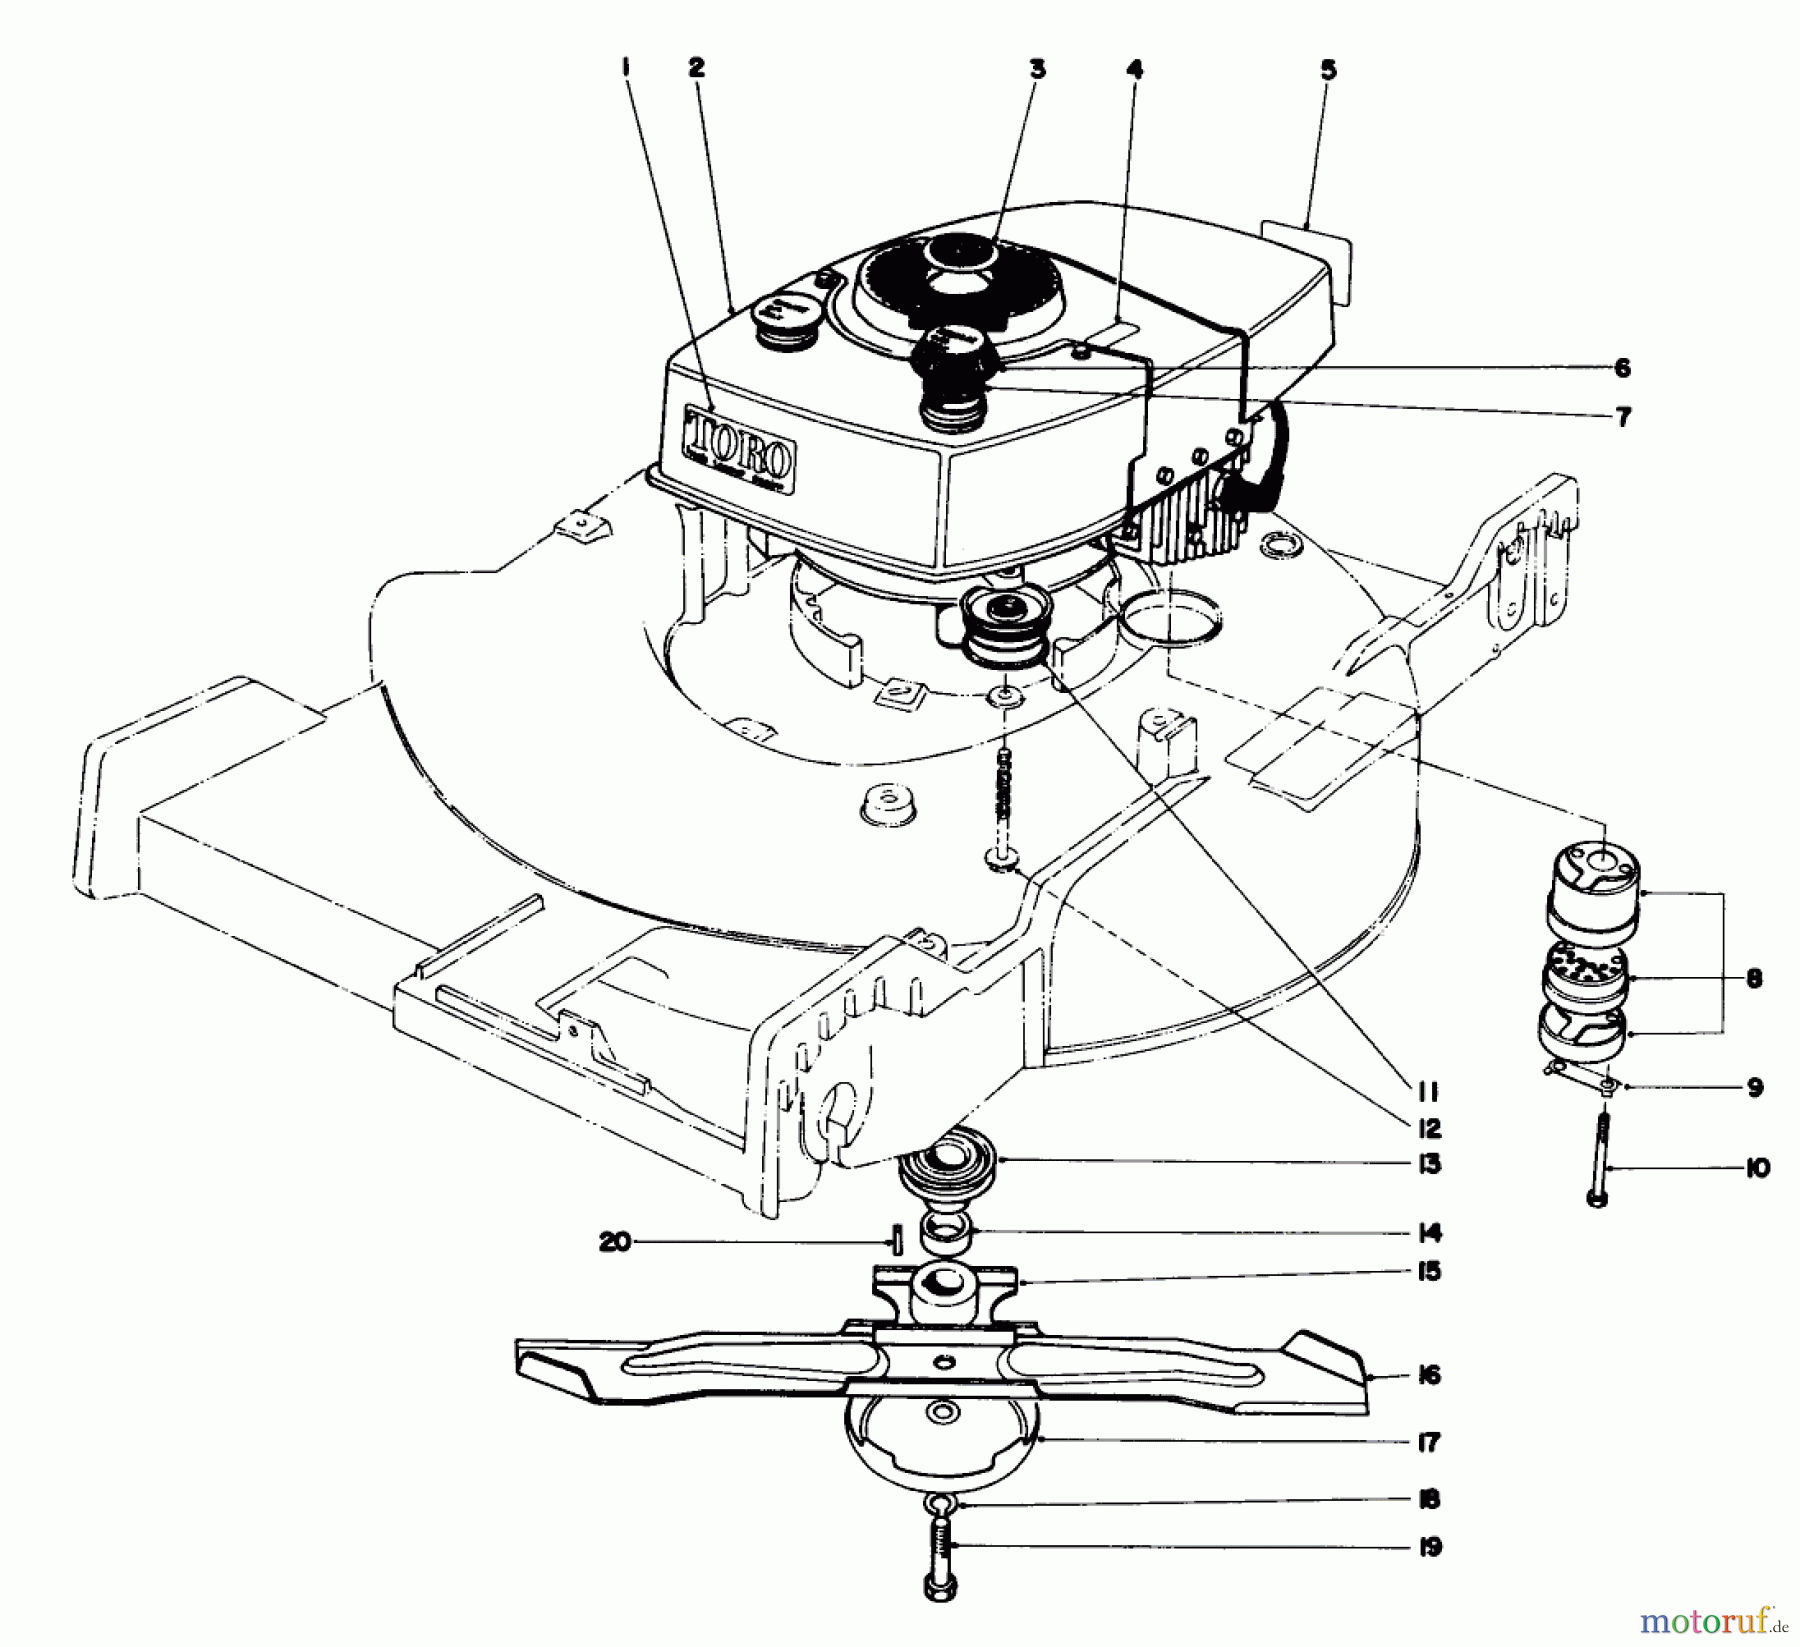  Toro Neu Mowers, Walk-Behind Seite 1 20440 - Toro Lawnmower, 1974 (4000001-4999999) ENGINE ASSEMBLY MODEL NO. 20550